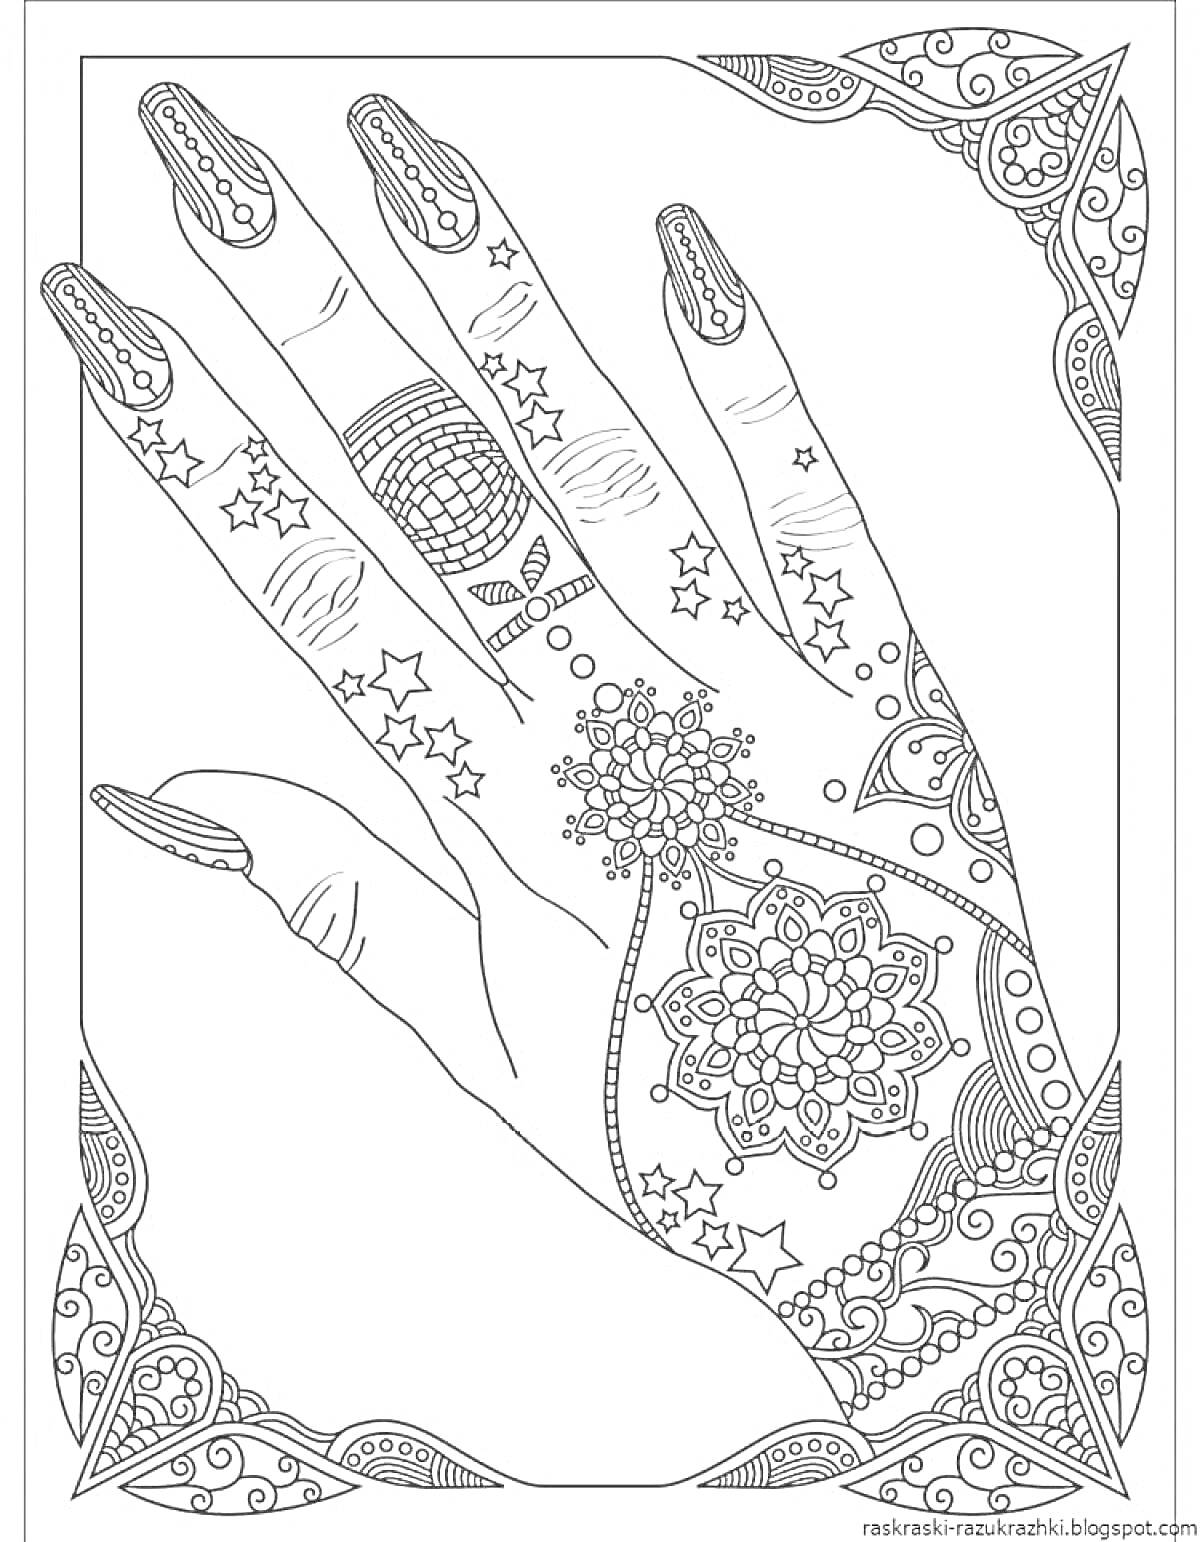 рука с узорами на коже и украшенными ногтями, со звёздами и цветочными элементами